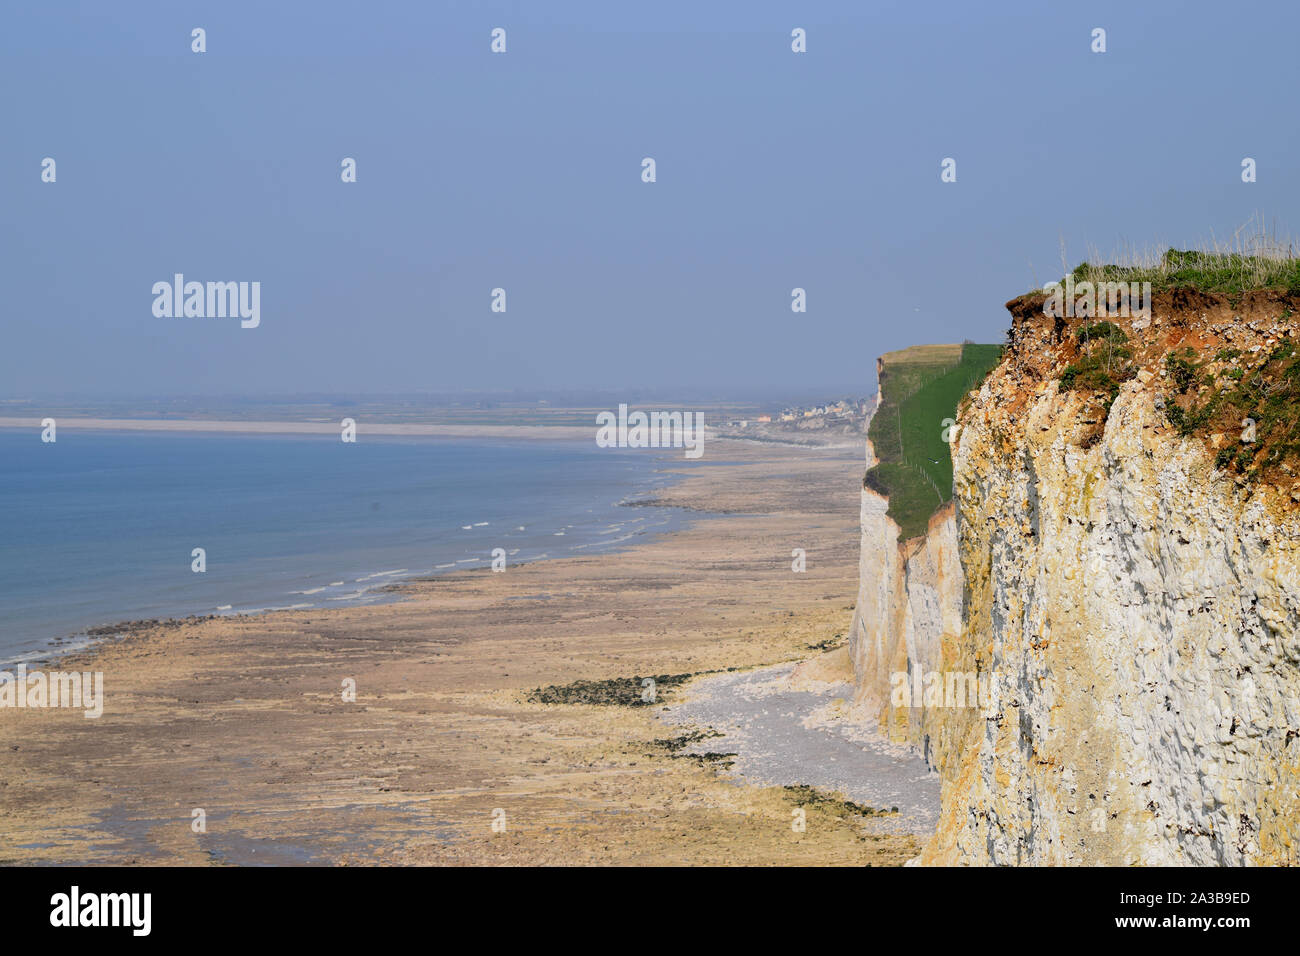 Les falaises entre le bois de Cise et mers les bains, chemins de pedestri avec vue sur la mer, la Baie de Somme, Ault, Onival, Cayeux sur mer Foto Stock